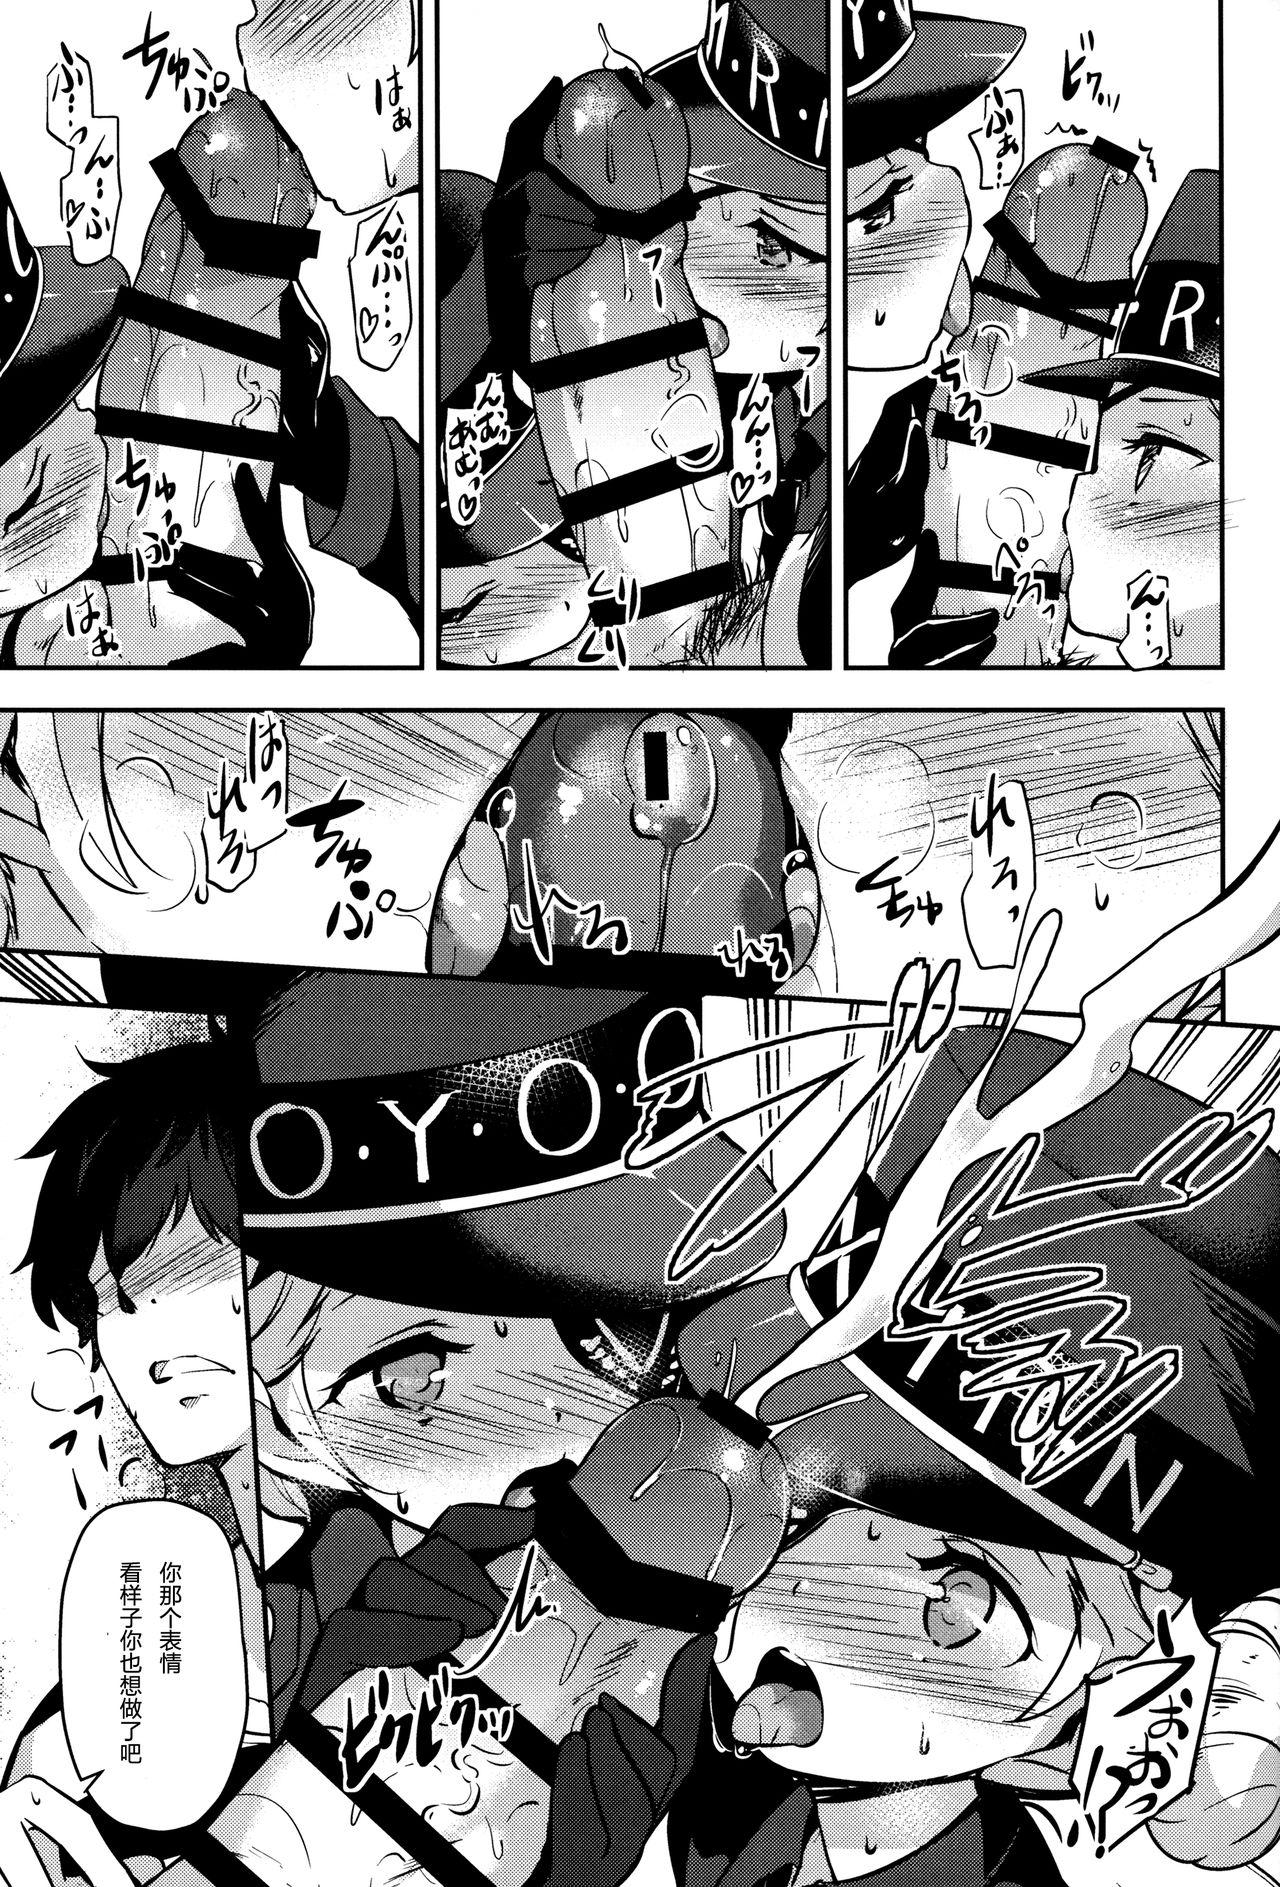 Cojiendo Kousei wa Junchou desu - Persona 5 Couple Fucking - Page 7